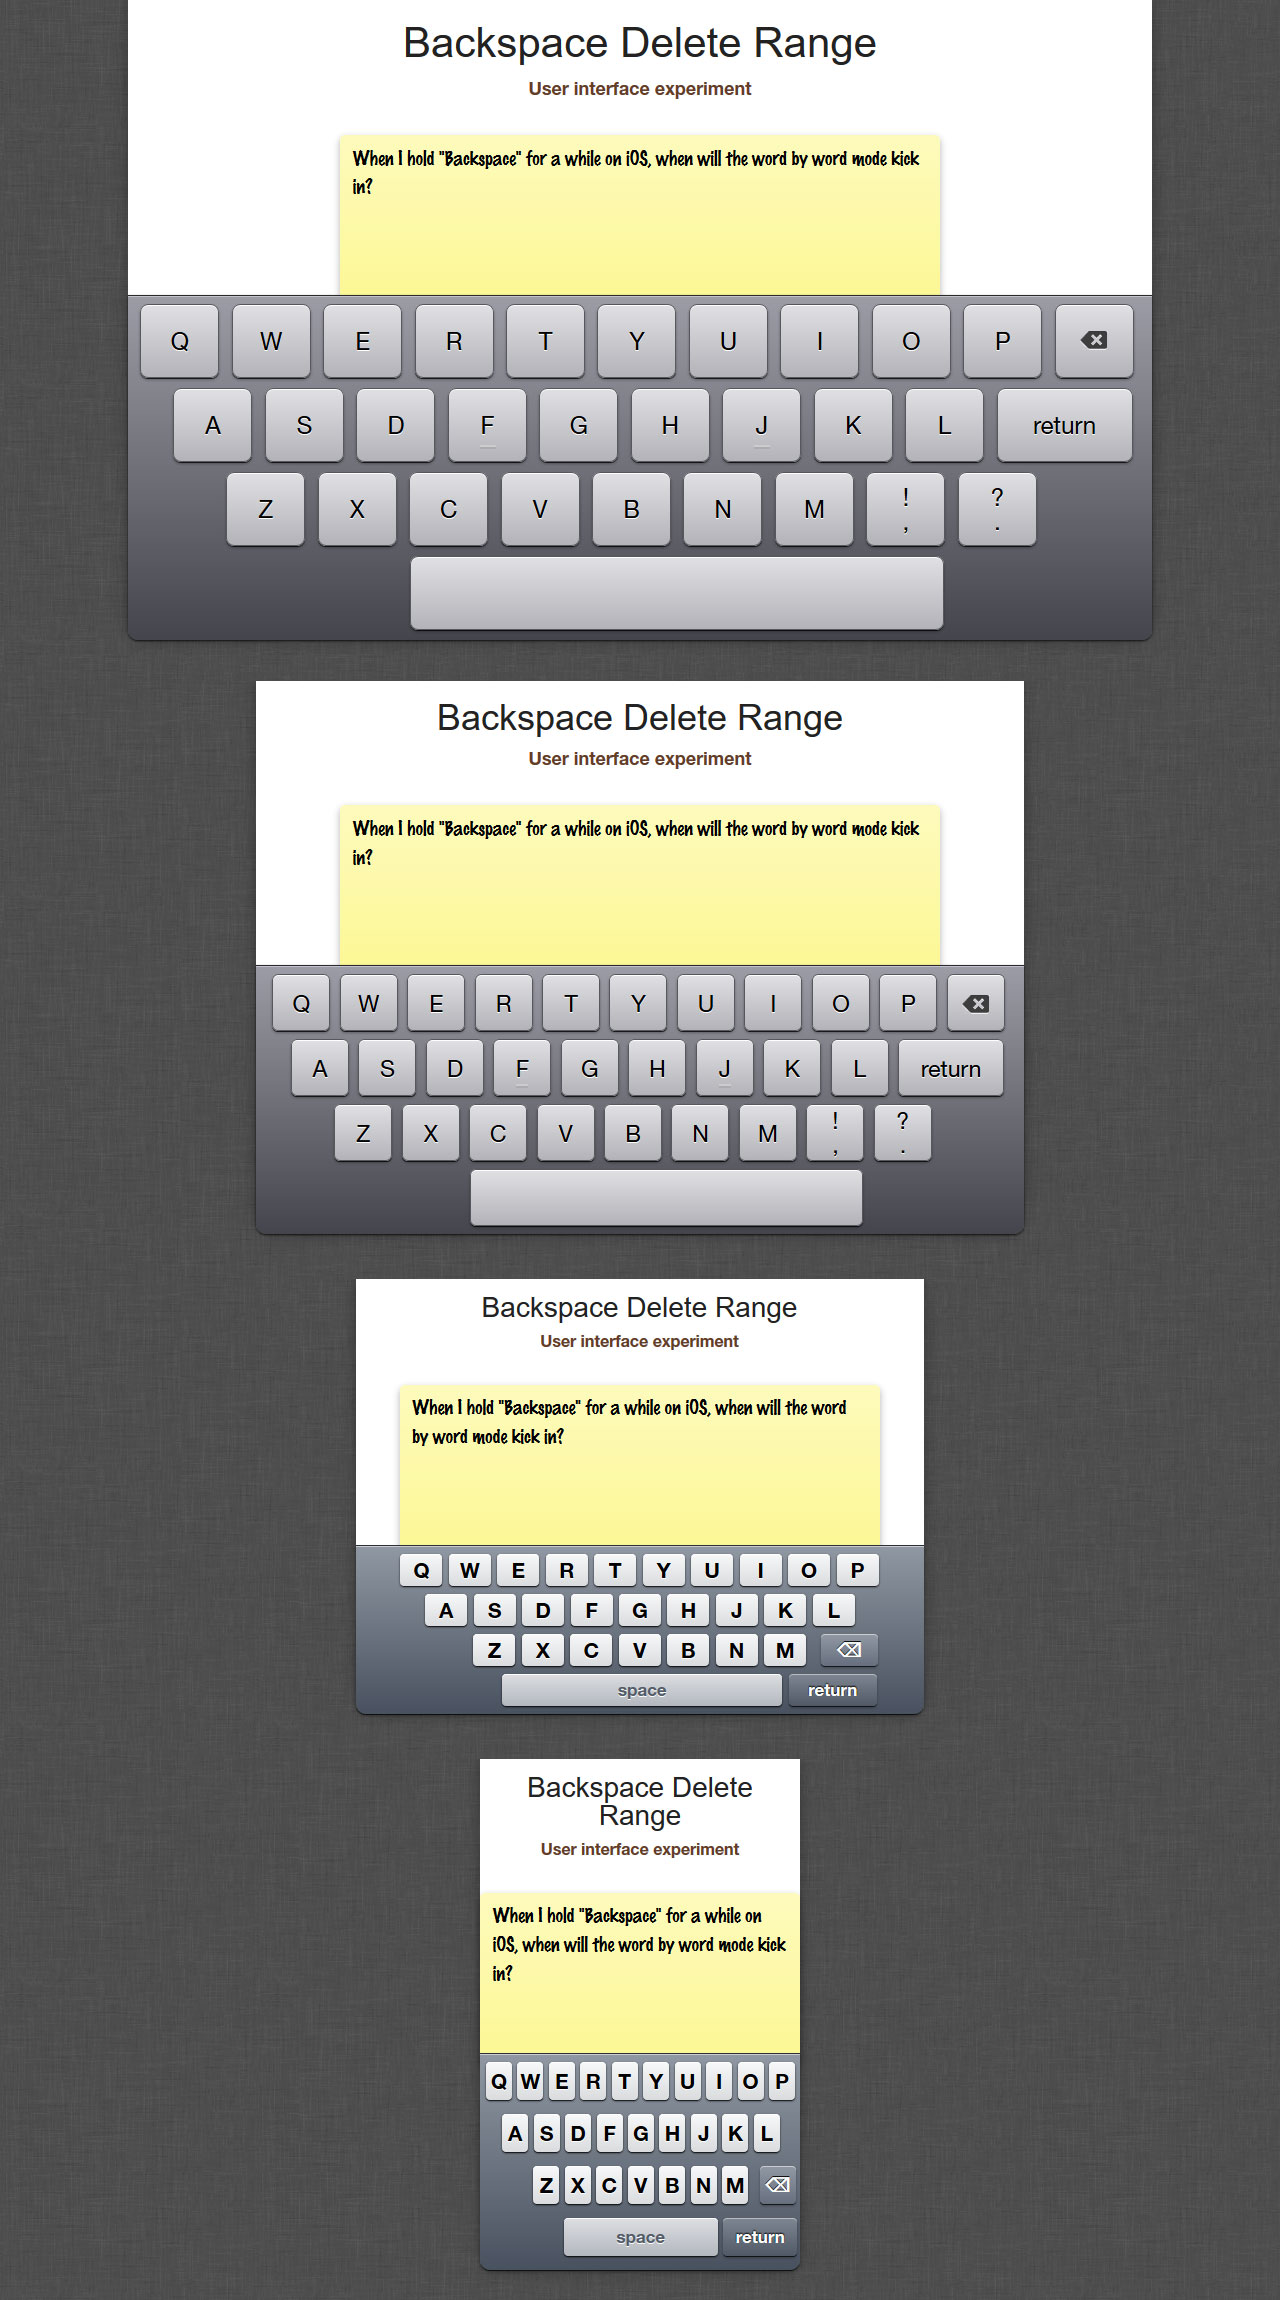 iOS 6 keyboards: iPad landscape, iPad portrait, iPhone landscape, and iPhone portrait